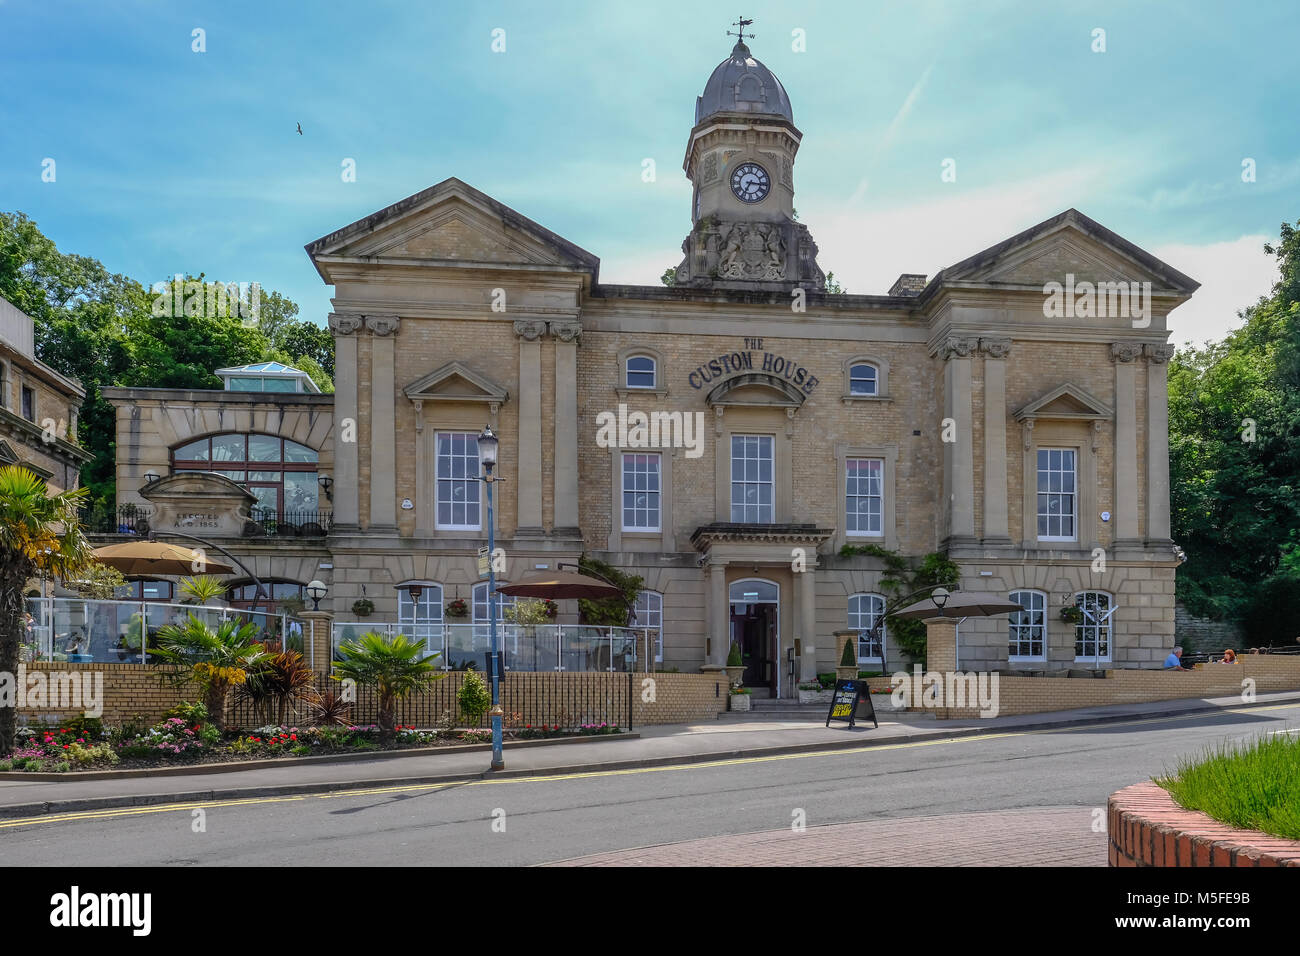 Cardiff, Wales - 21. Mai 2017: Custom House, historisches Gebäude an der Cardiff Bay in der Nähe des Barage. Stockfoto